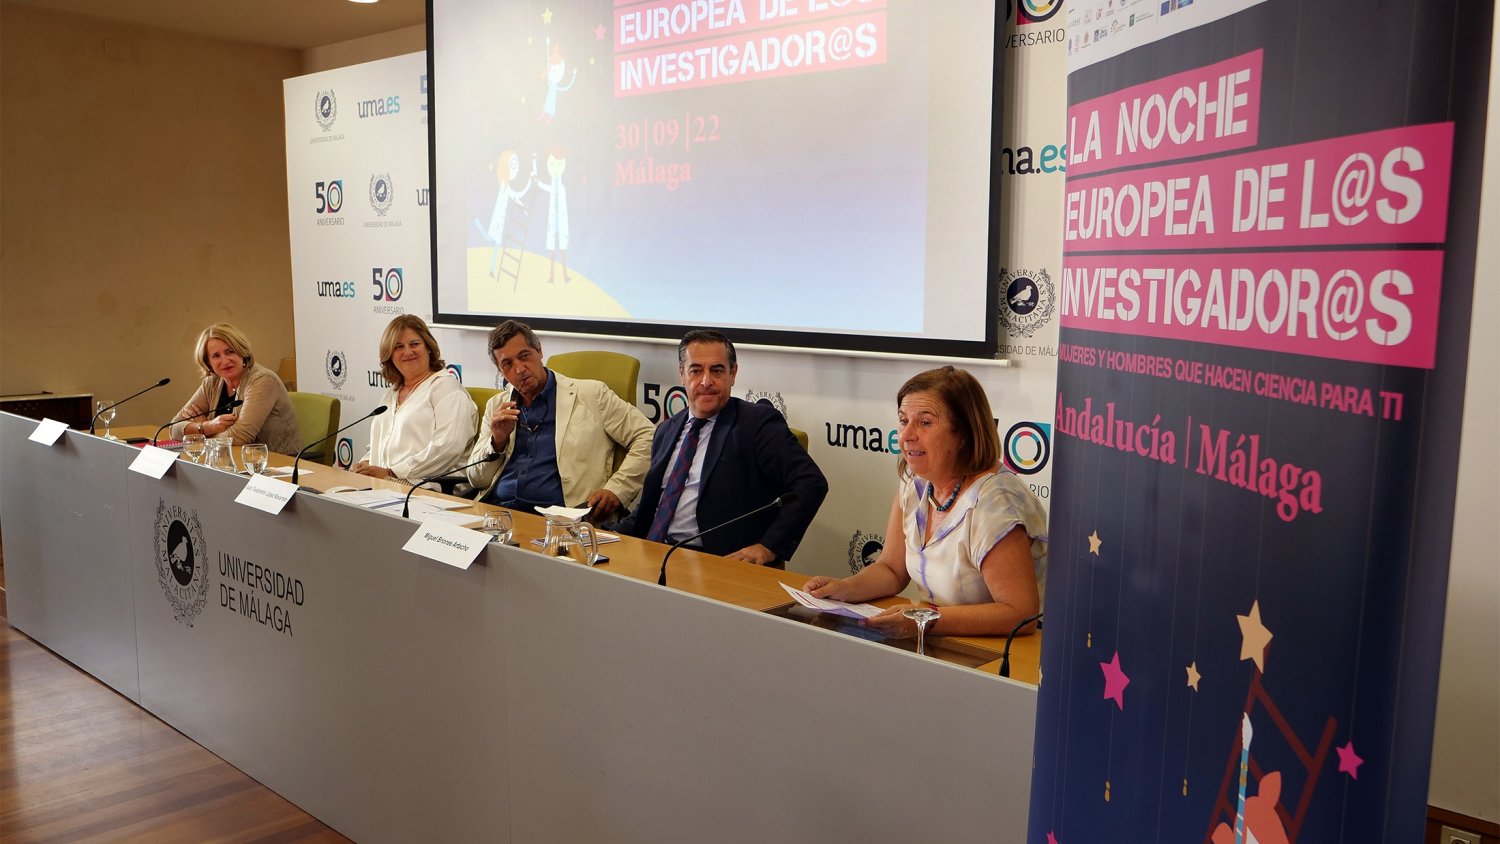 UMA.- La Noche Europea de los Investigadores ultima detalles para llenar de ciencia las calles de Málaga